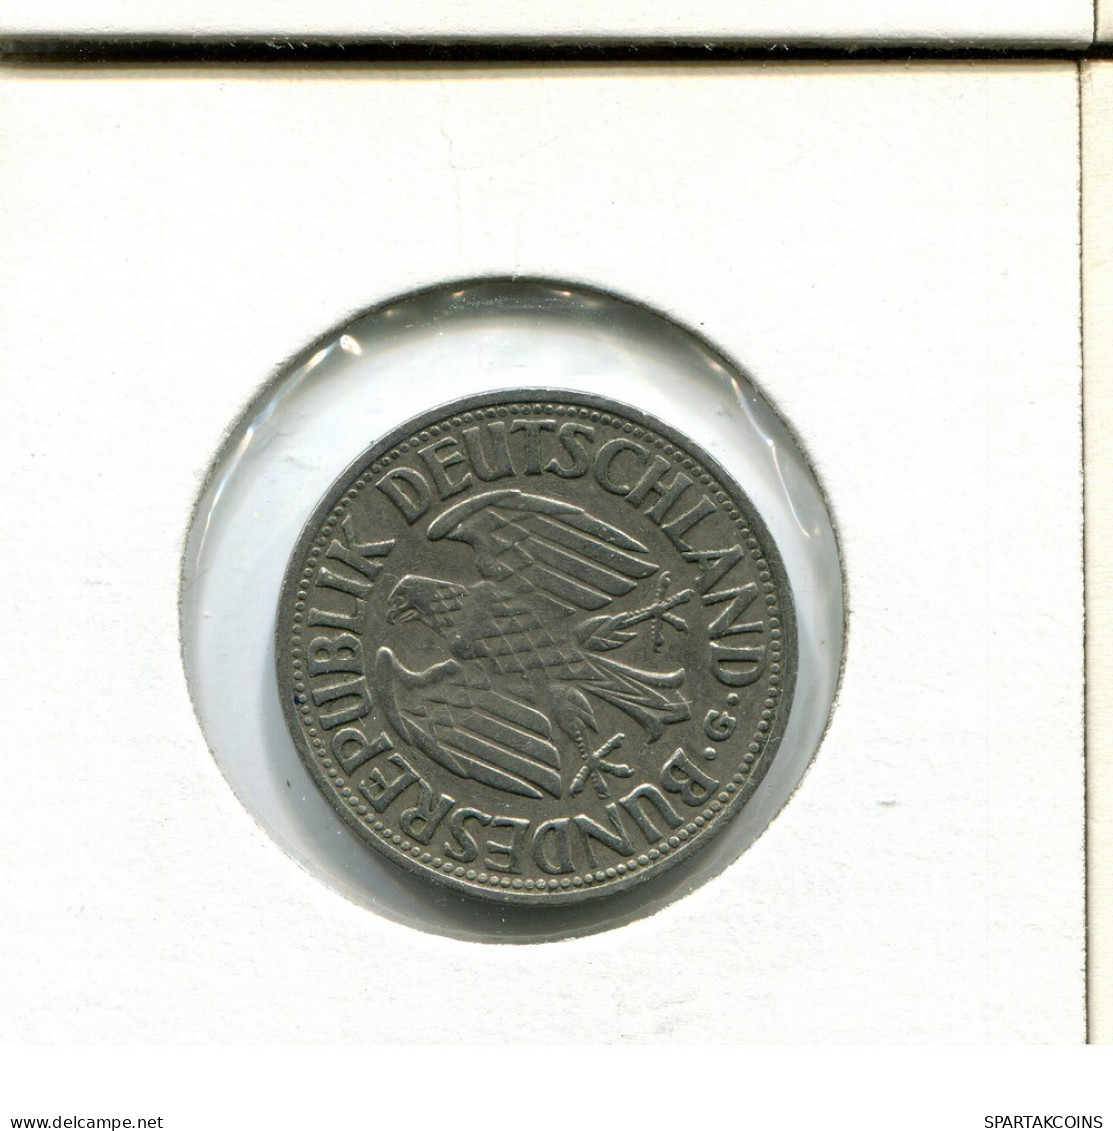 1 DM 1950 G BRD ALEMANIA Moneda GERMANY #AU738.E.A - 1 Mark